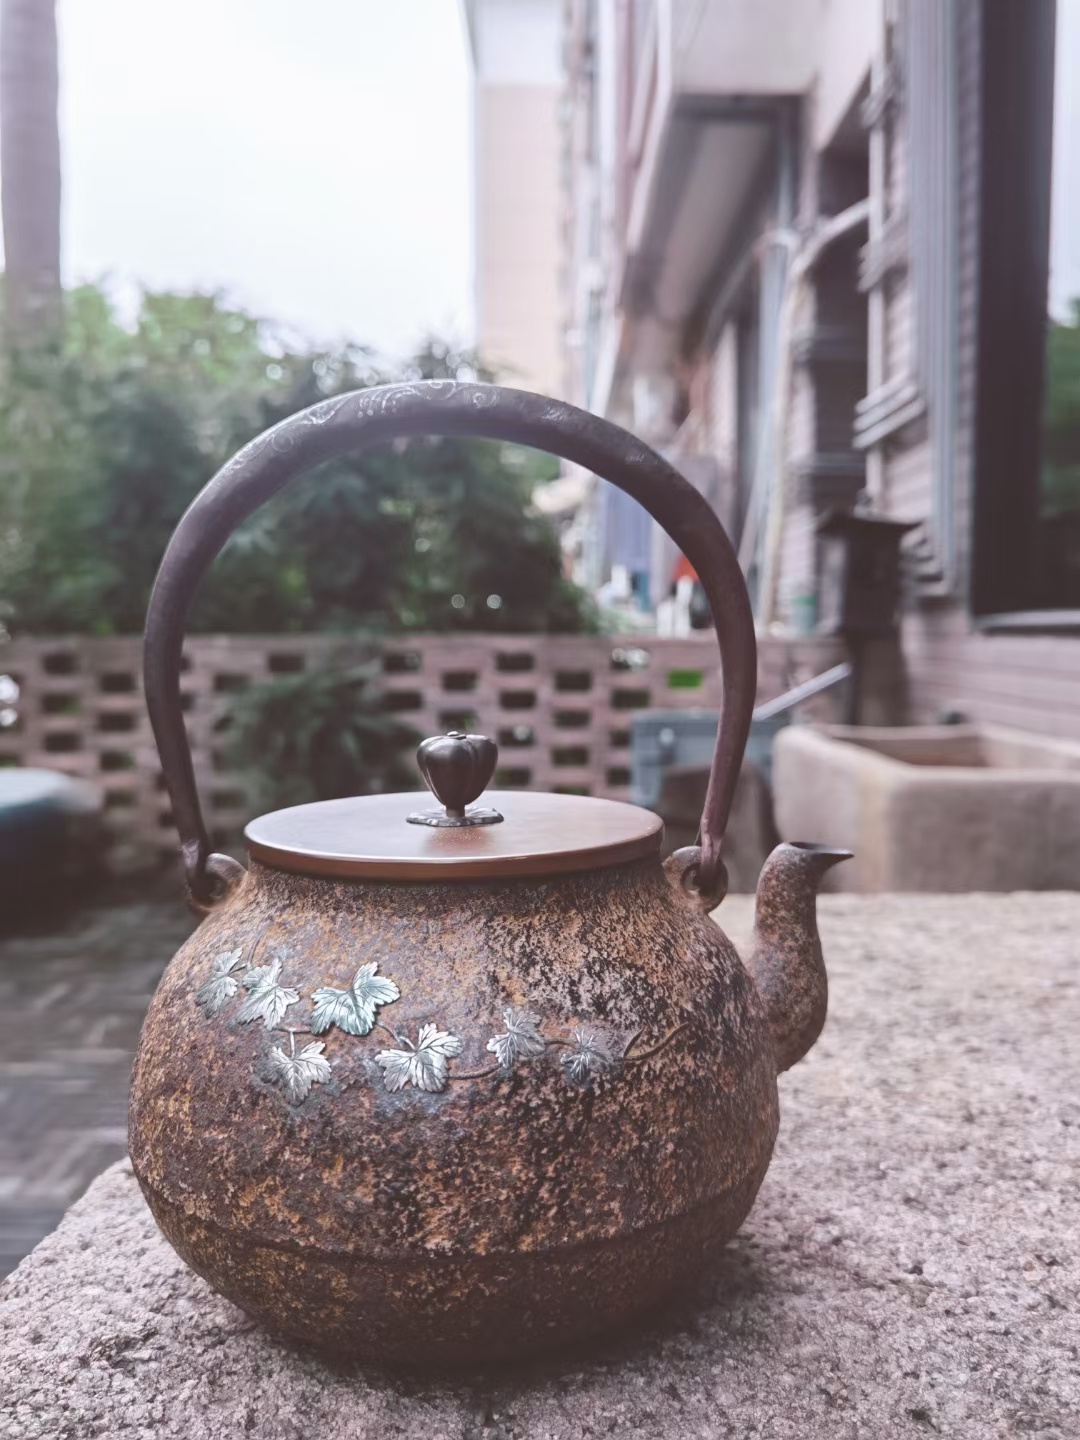 日本 茶道具 金寿堂 雨宫造 嵌银葡萄叶纹 铁瓶/老铁壶